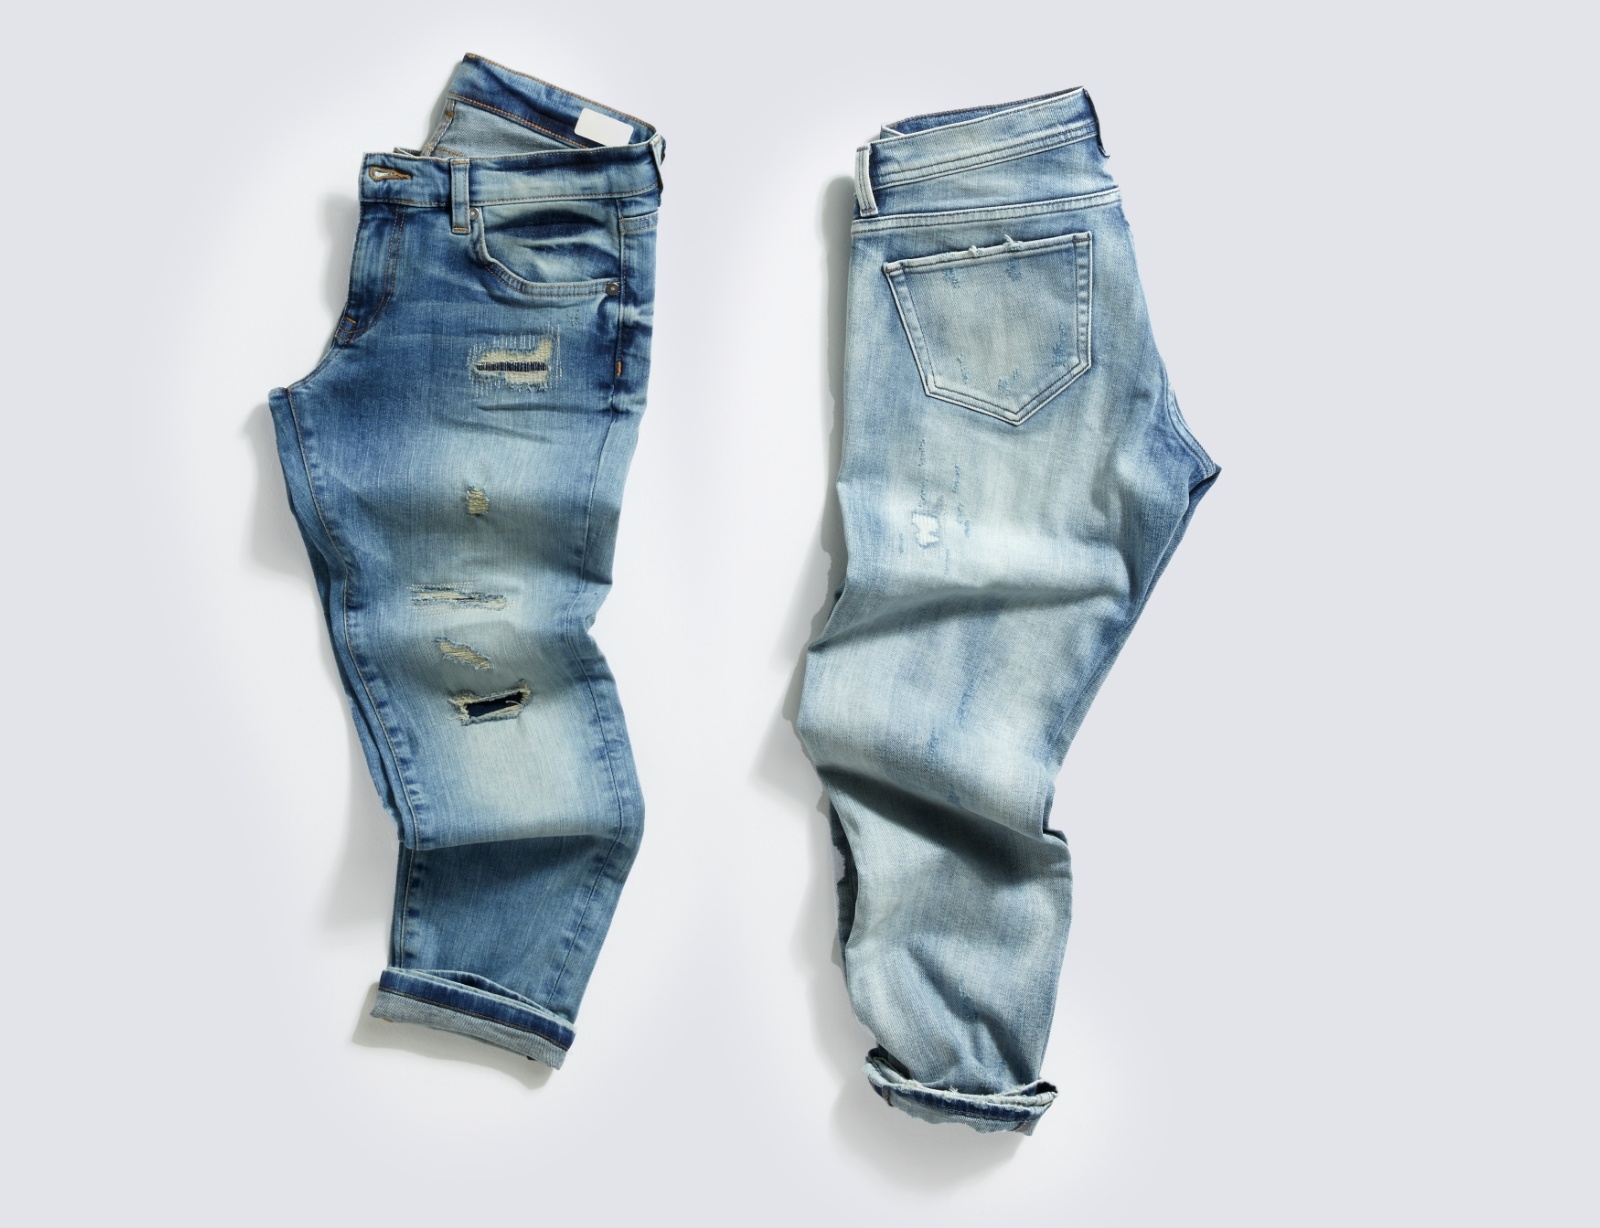 Jeans to jeden z najbardziej wszechstronnych materiałów